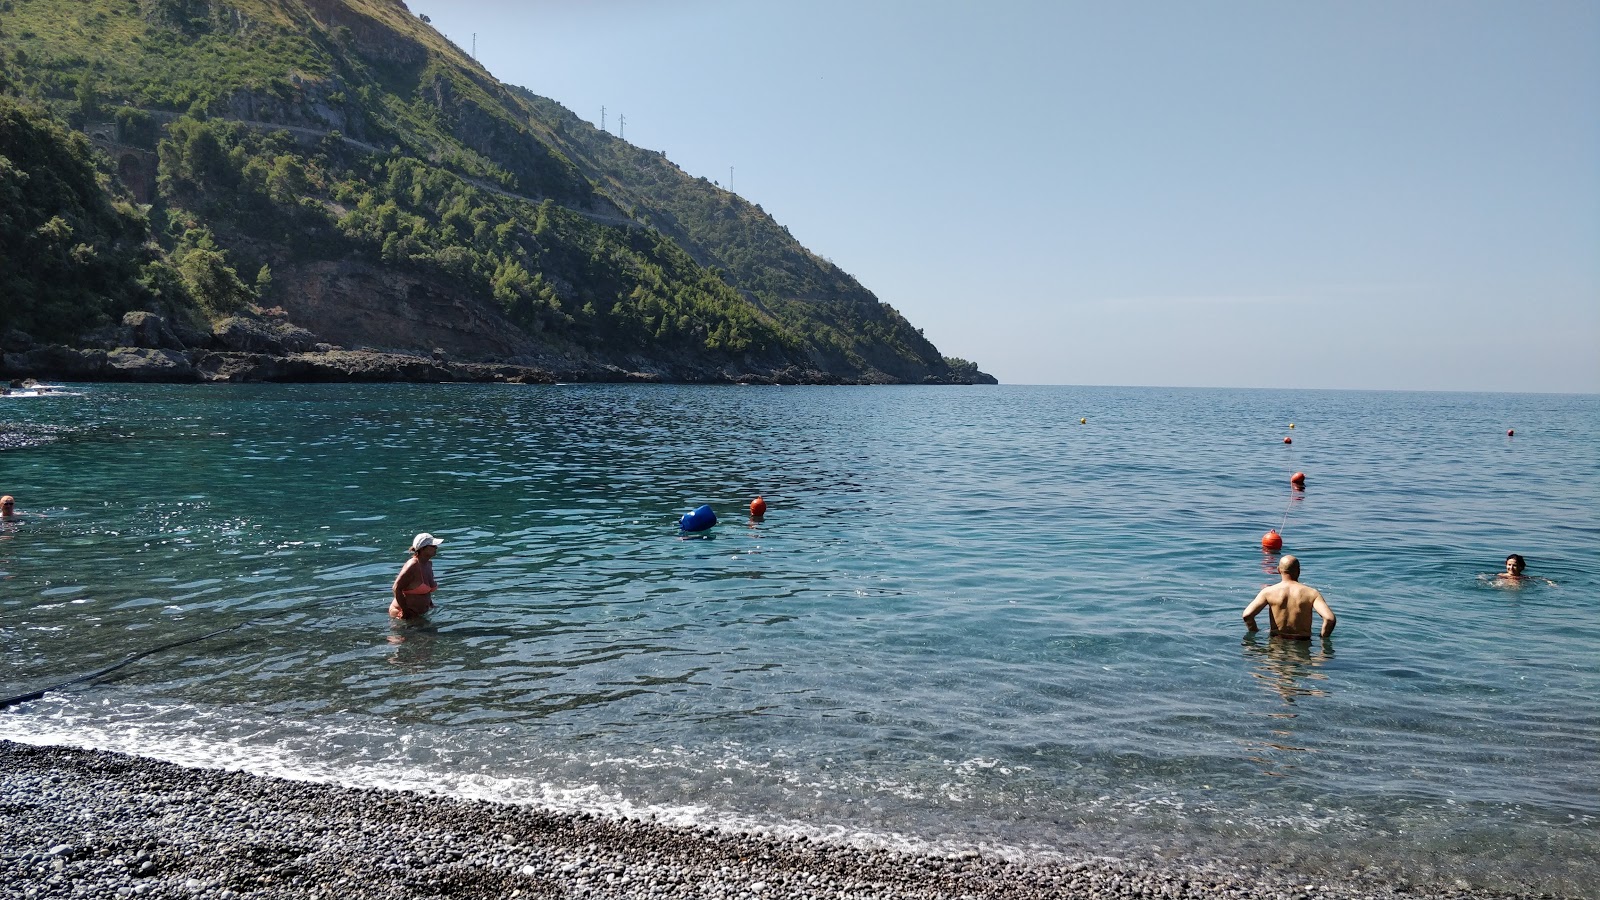 Photo of Spiaggia Portacquafridda located in natural area